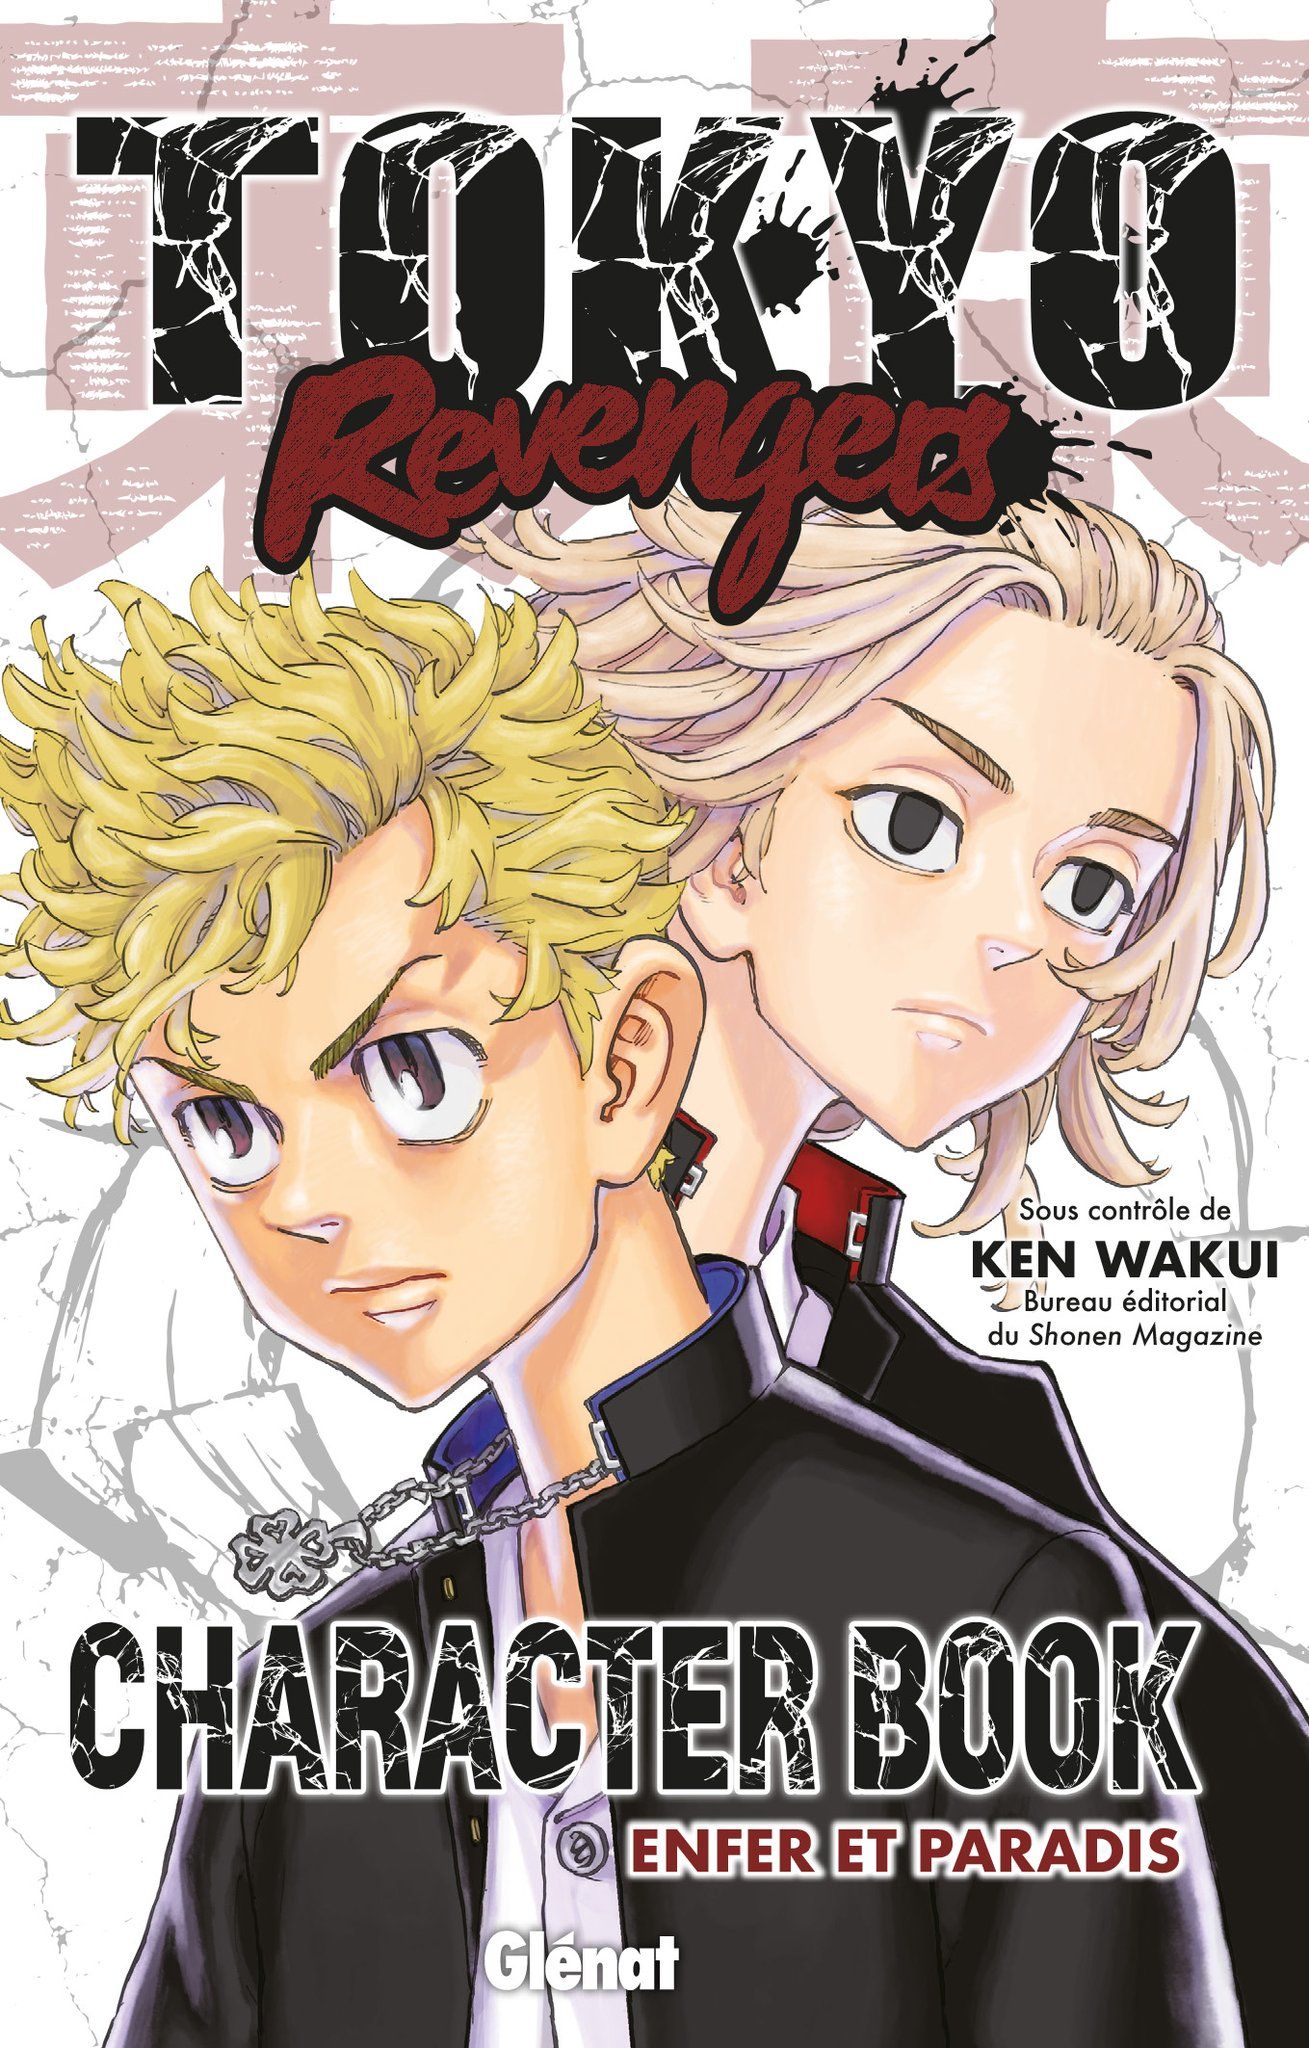 Tokyo Revenger Character Book enfer et paradis des éditions Glénat